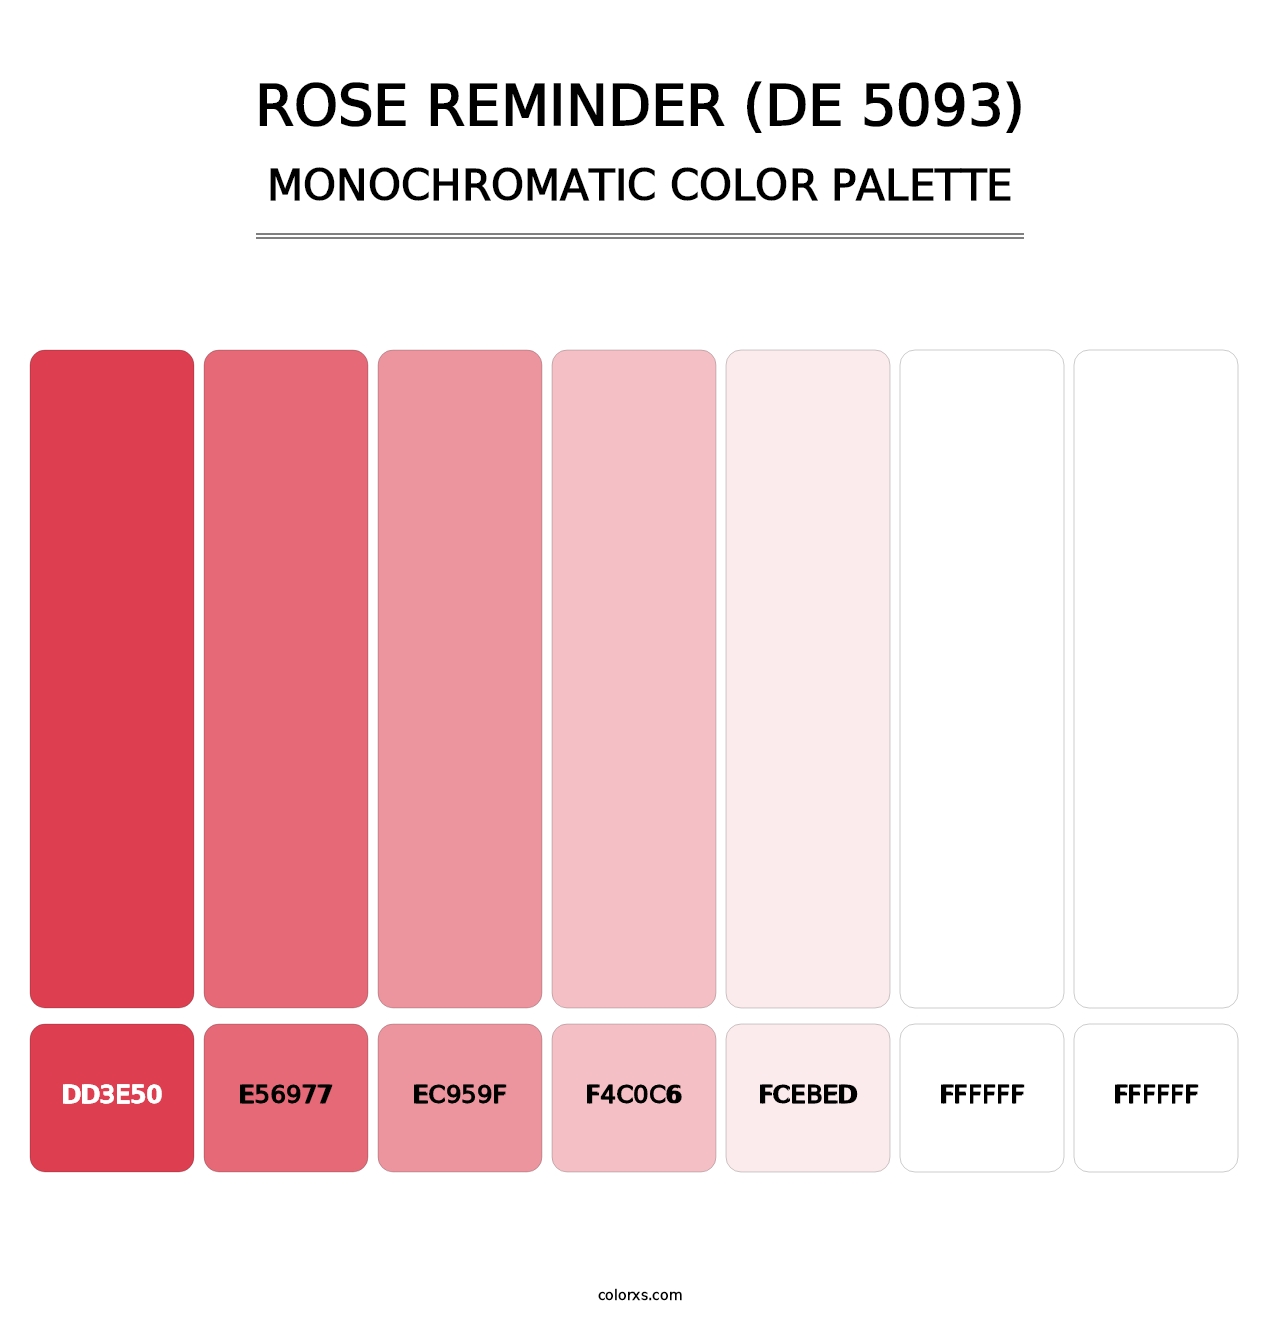 Rose Reminder (DE 5093) - Monochromatic Color Palette